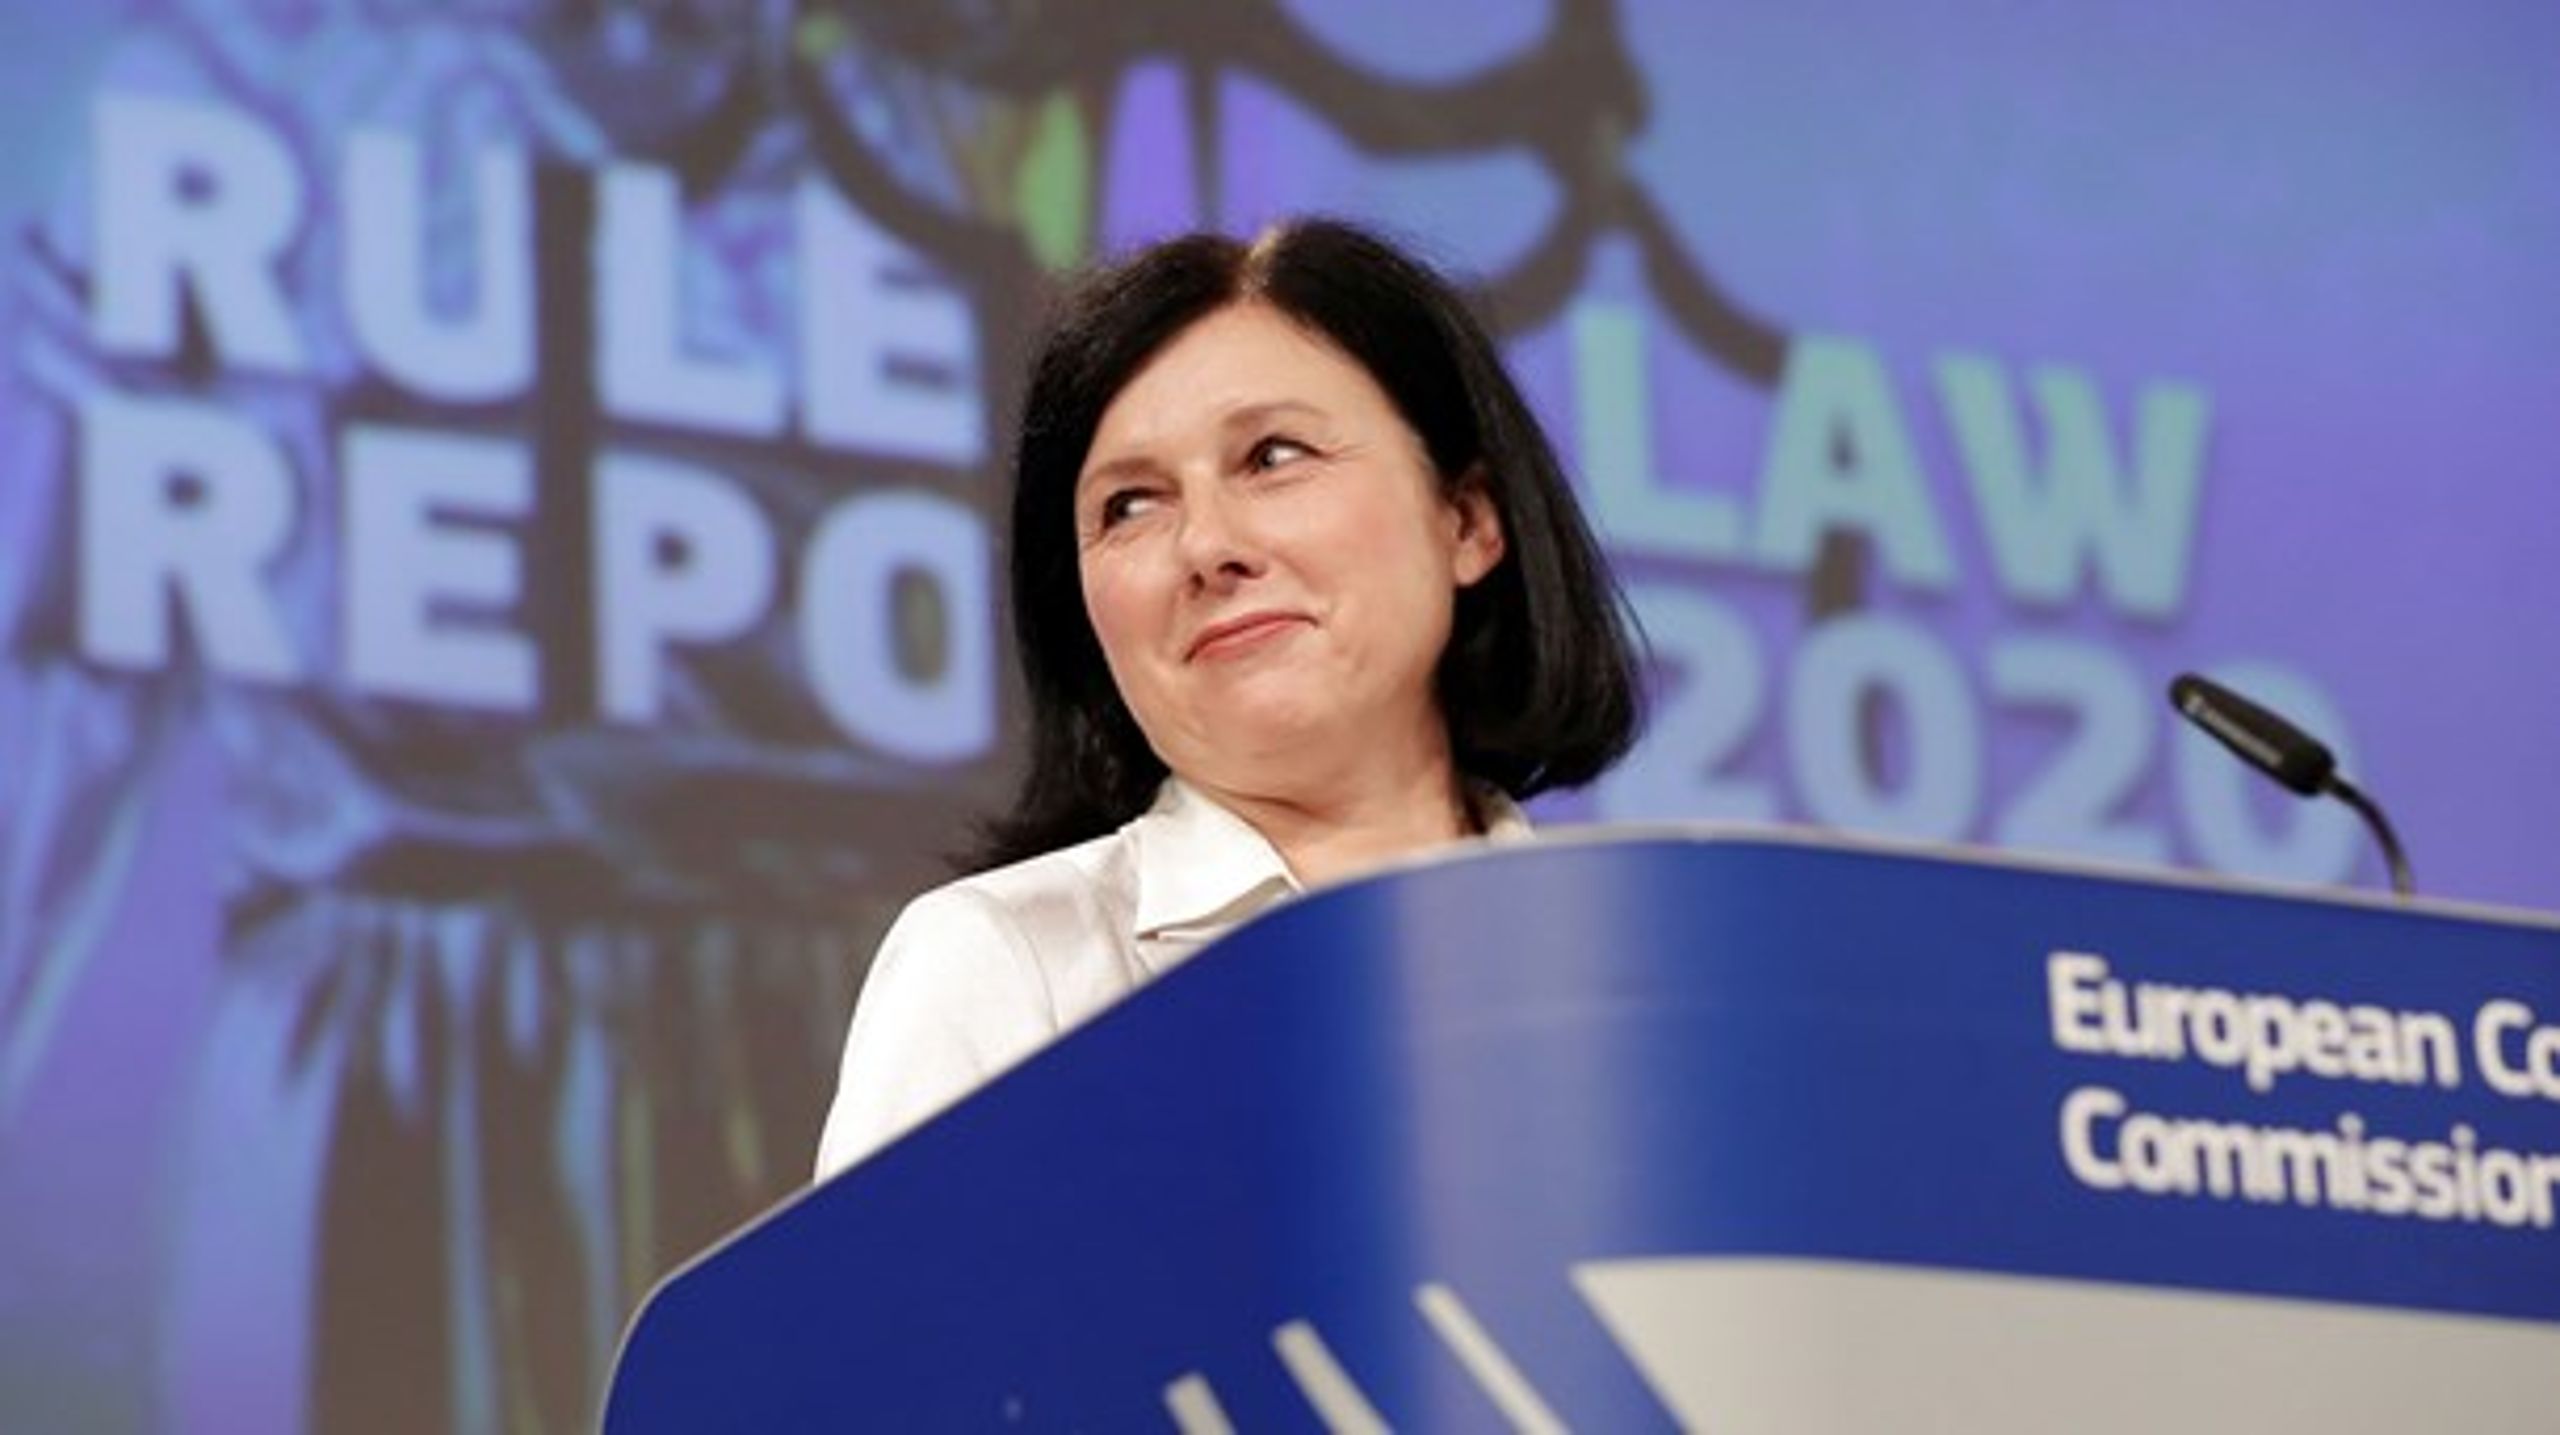 Her er EU-Kommissionens næstformand for værdier og gennemsigtighed, Vera Jourová. Hende vil den ungarske premierminister have fyret.